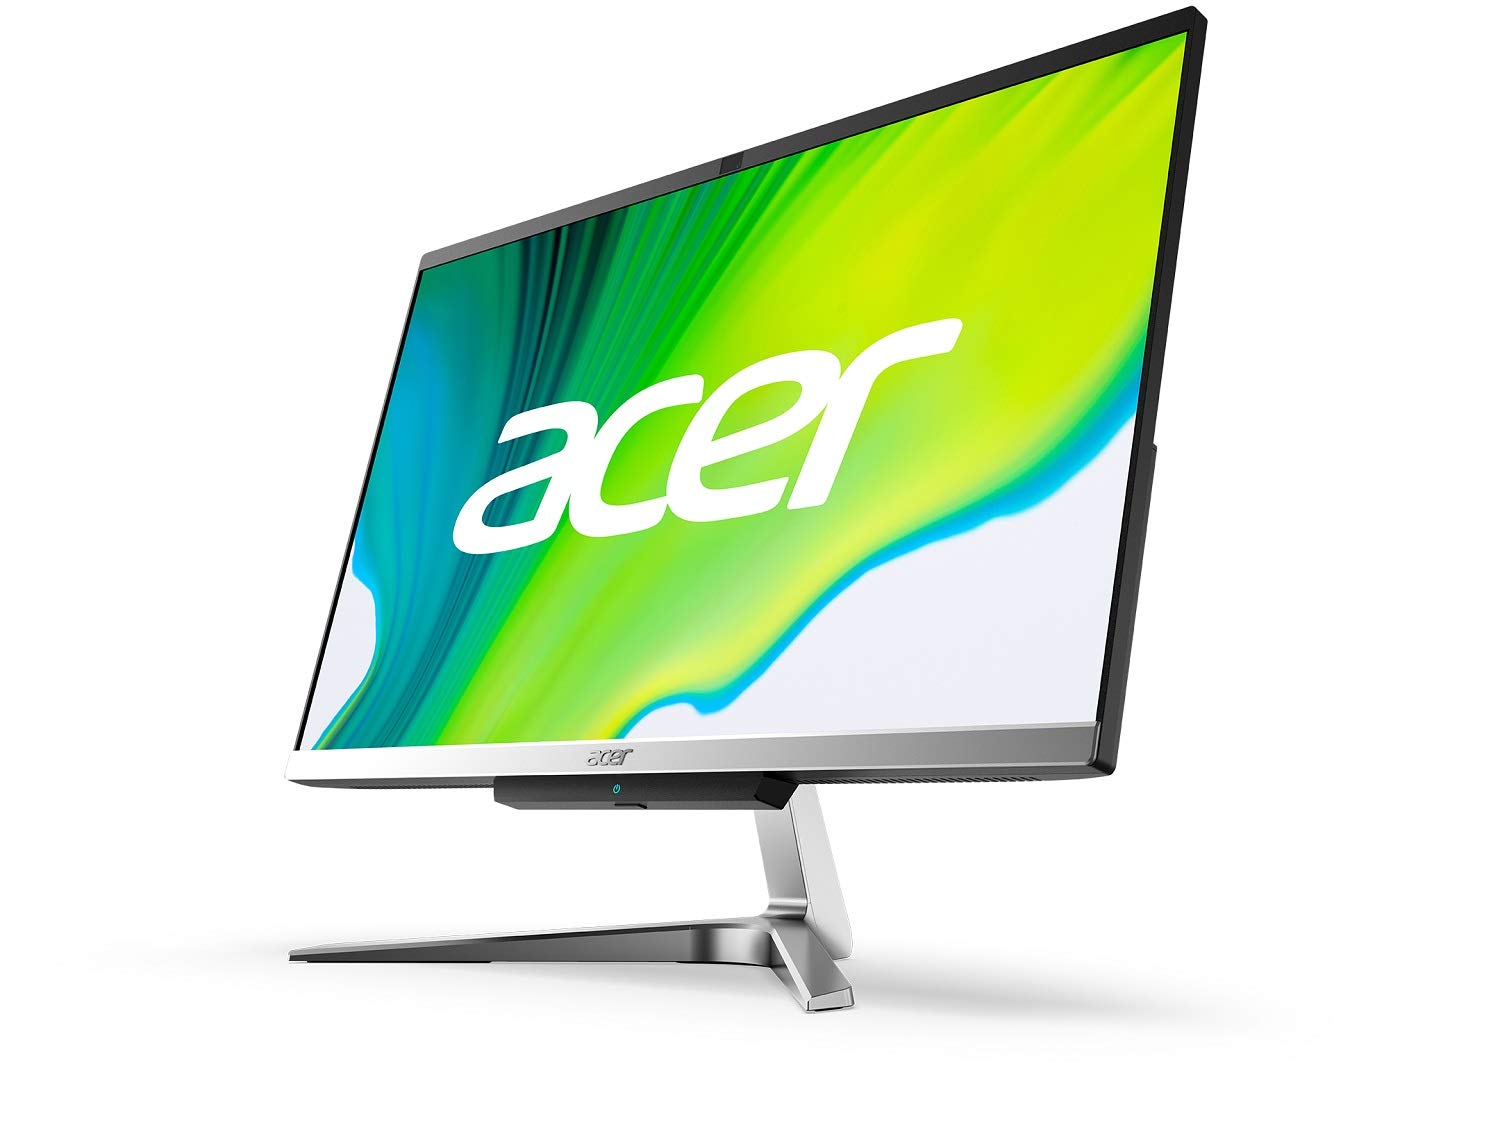 Acer Aspire C24-963-UA91 AIO Desktop, 23.8